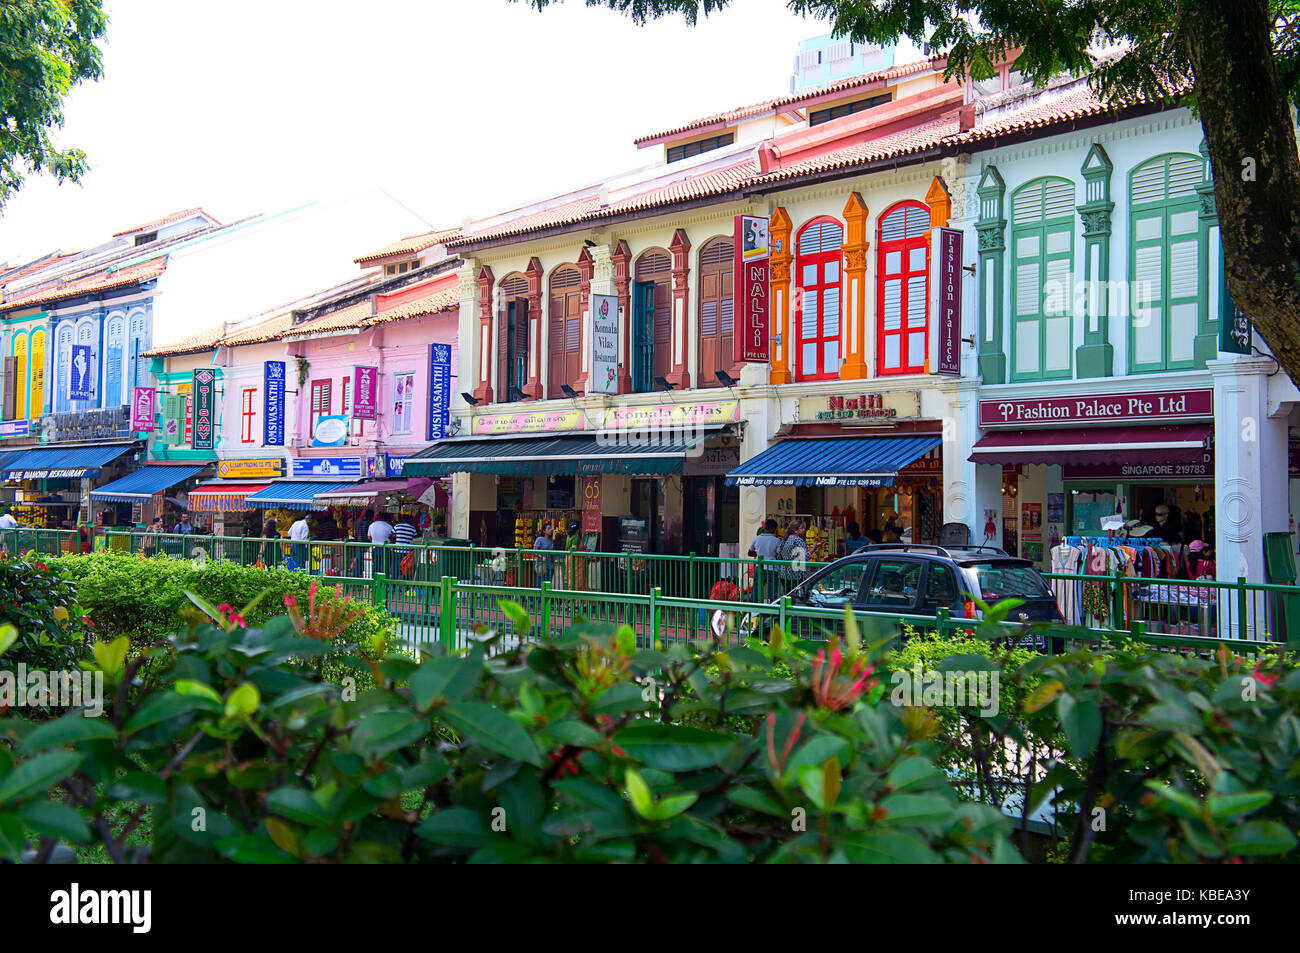 Bunte Erbe Gebäude Fassaden in Little India, Zentrum der Stadt großen indischen Gemeinschaft und einer der lebendigsten Bezirke. Singapur Stockfoto